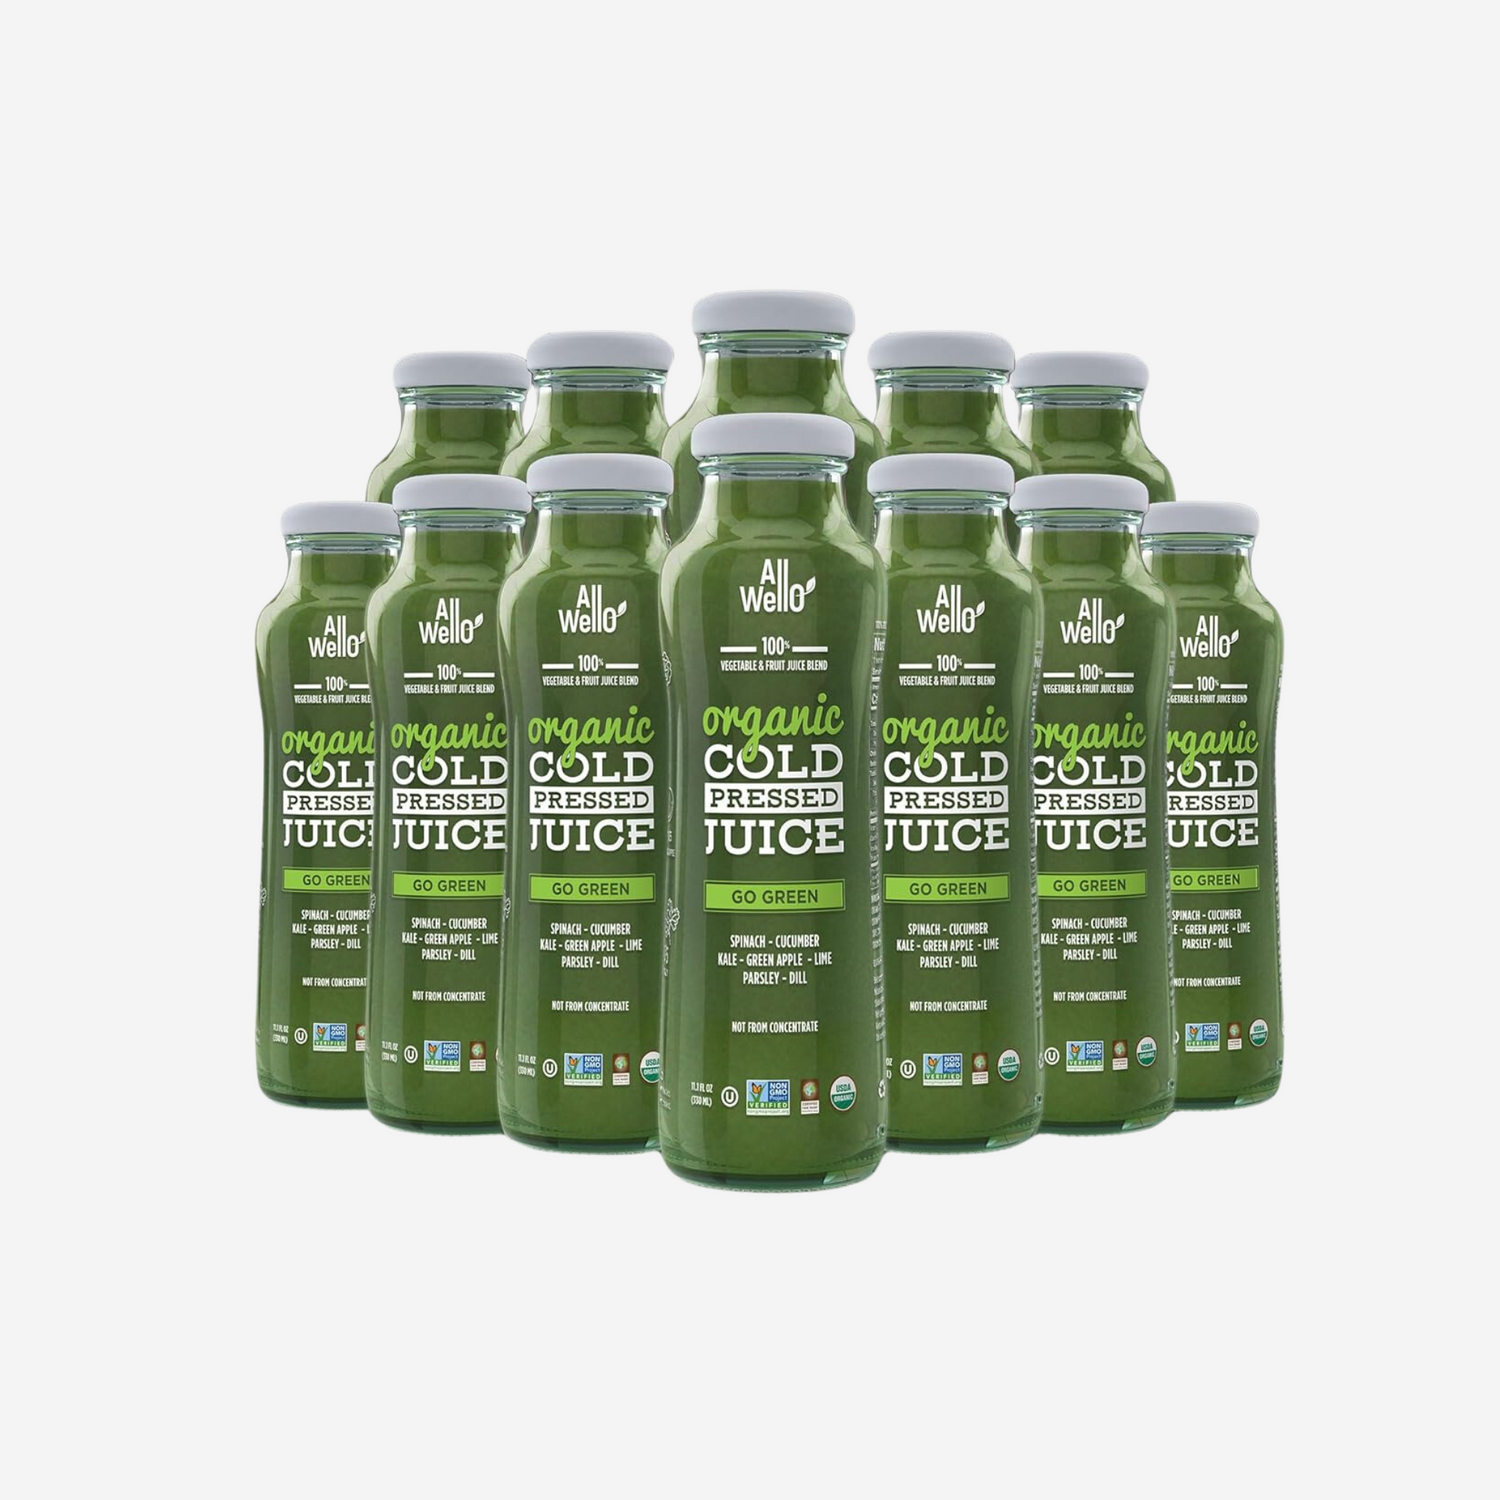 ALLWELLO Organic Cold Pressed Juice - Go Green